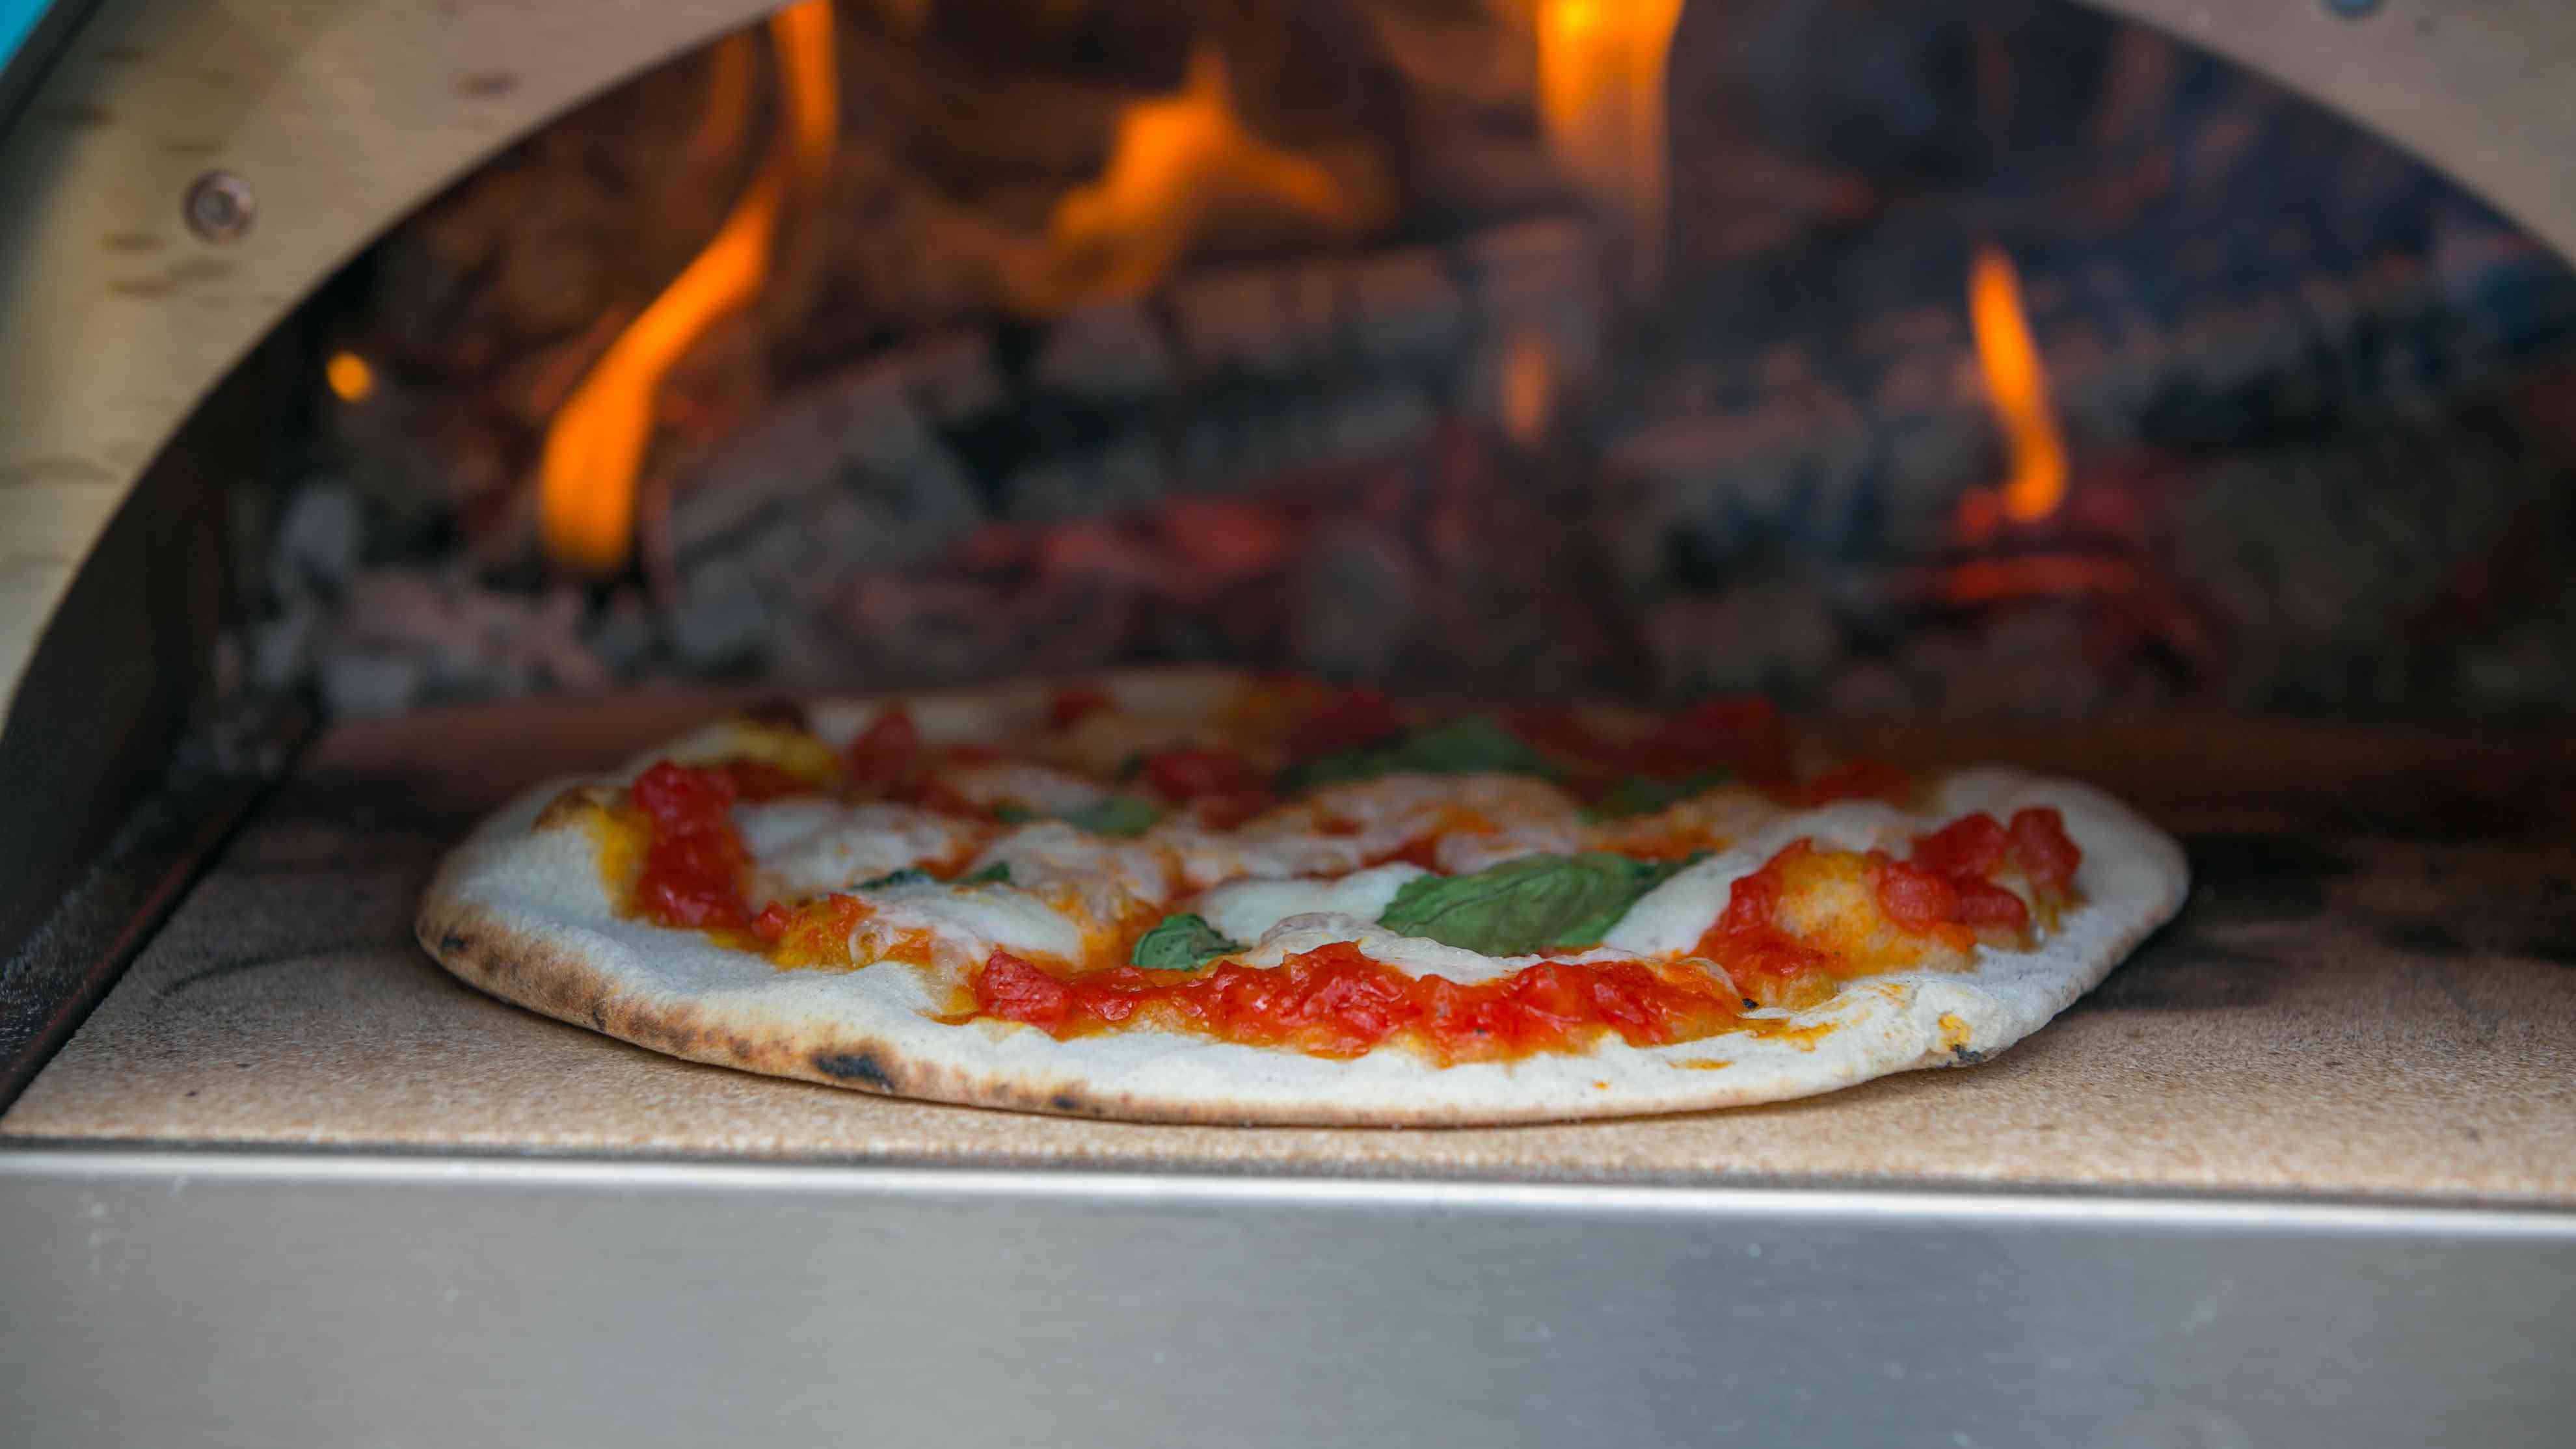 Igneus Minimo pizza oven